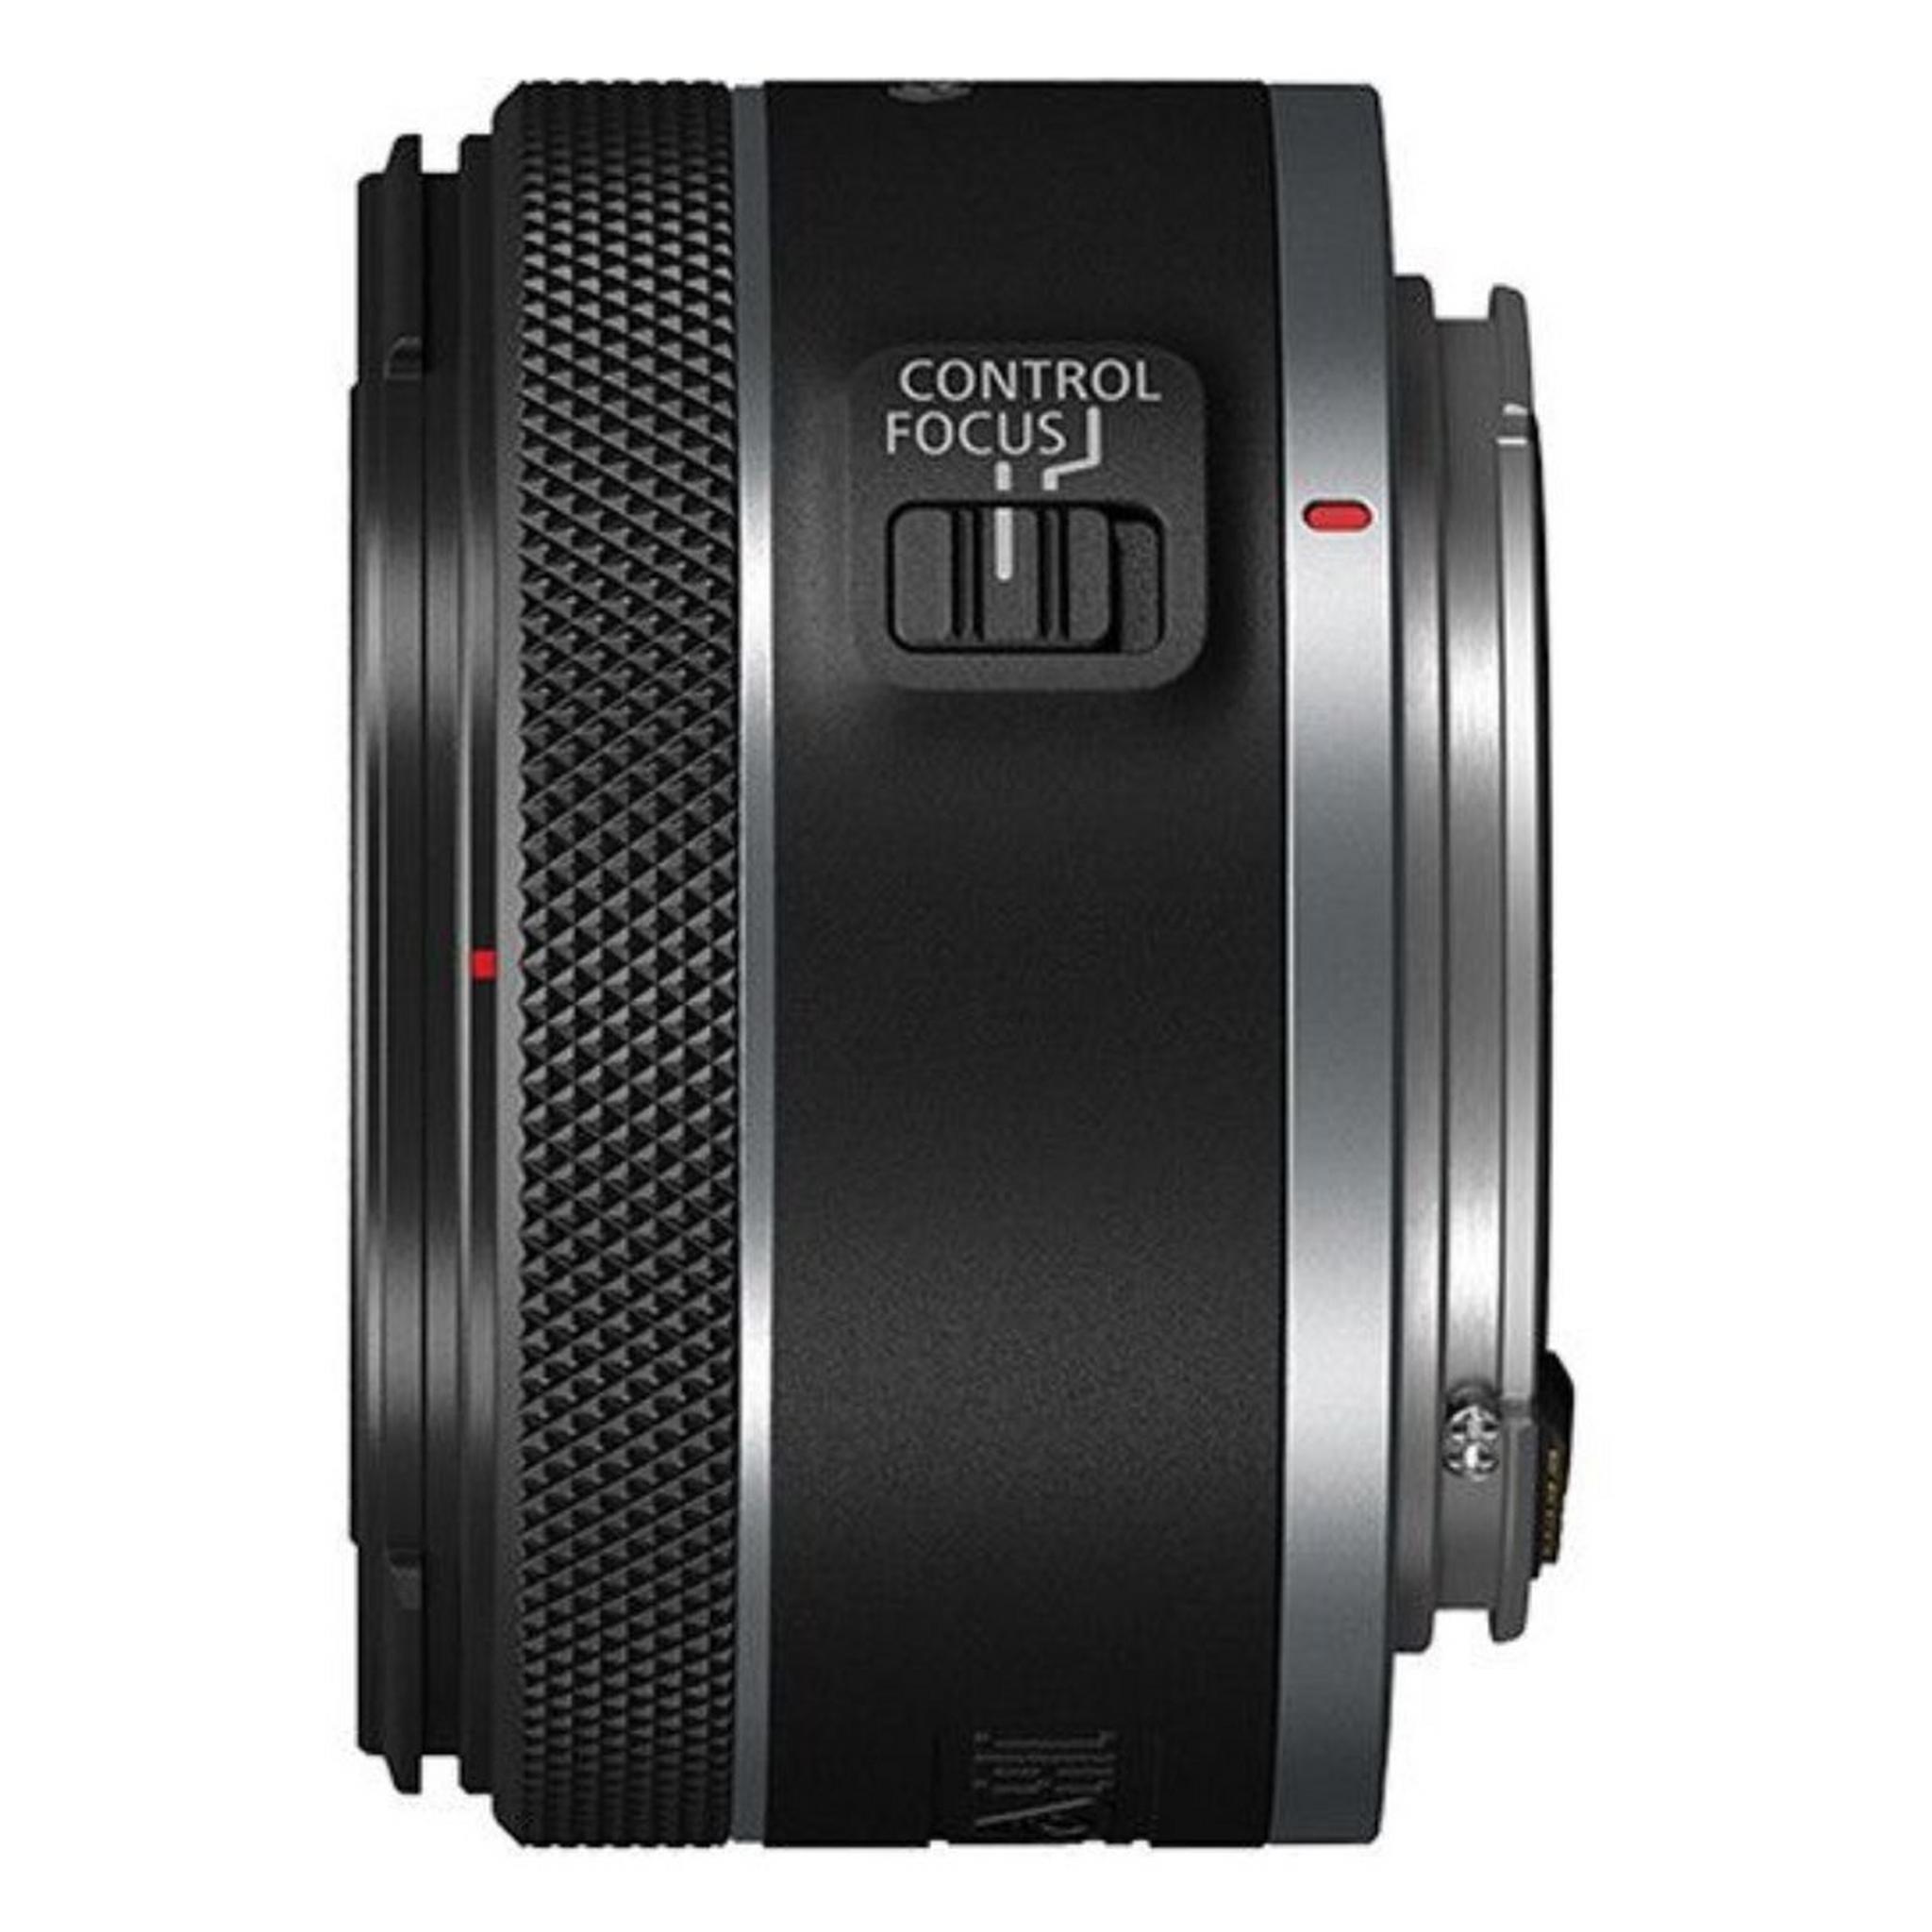 Canon RF 50MM F/1.8 STM Lens